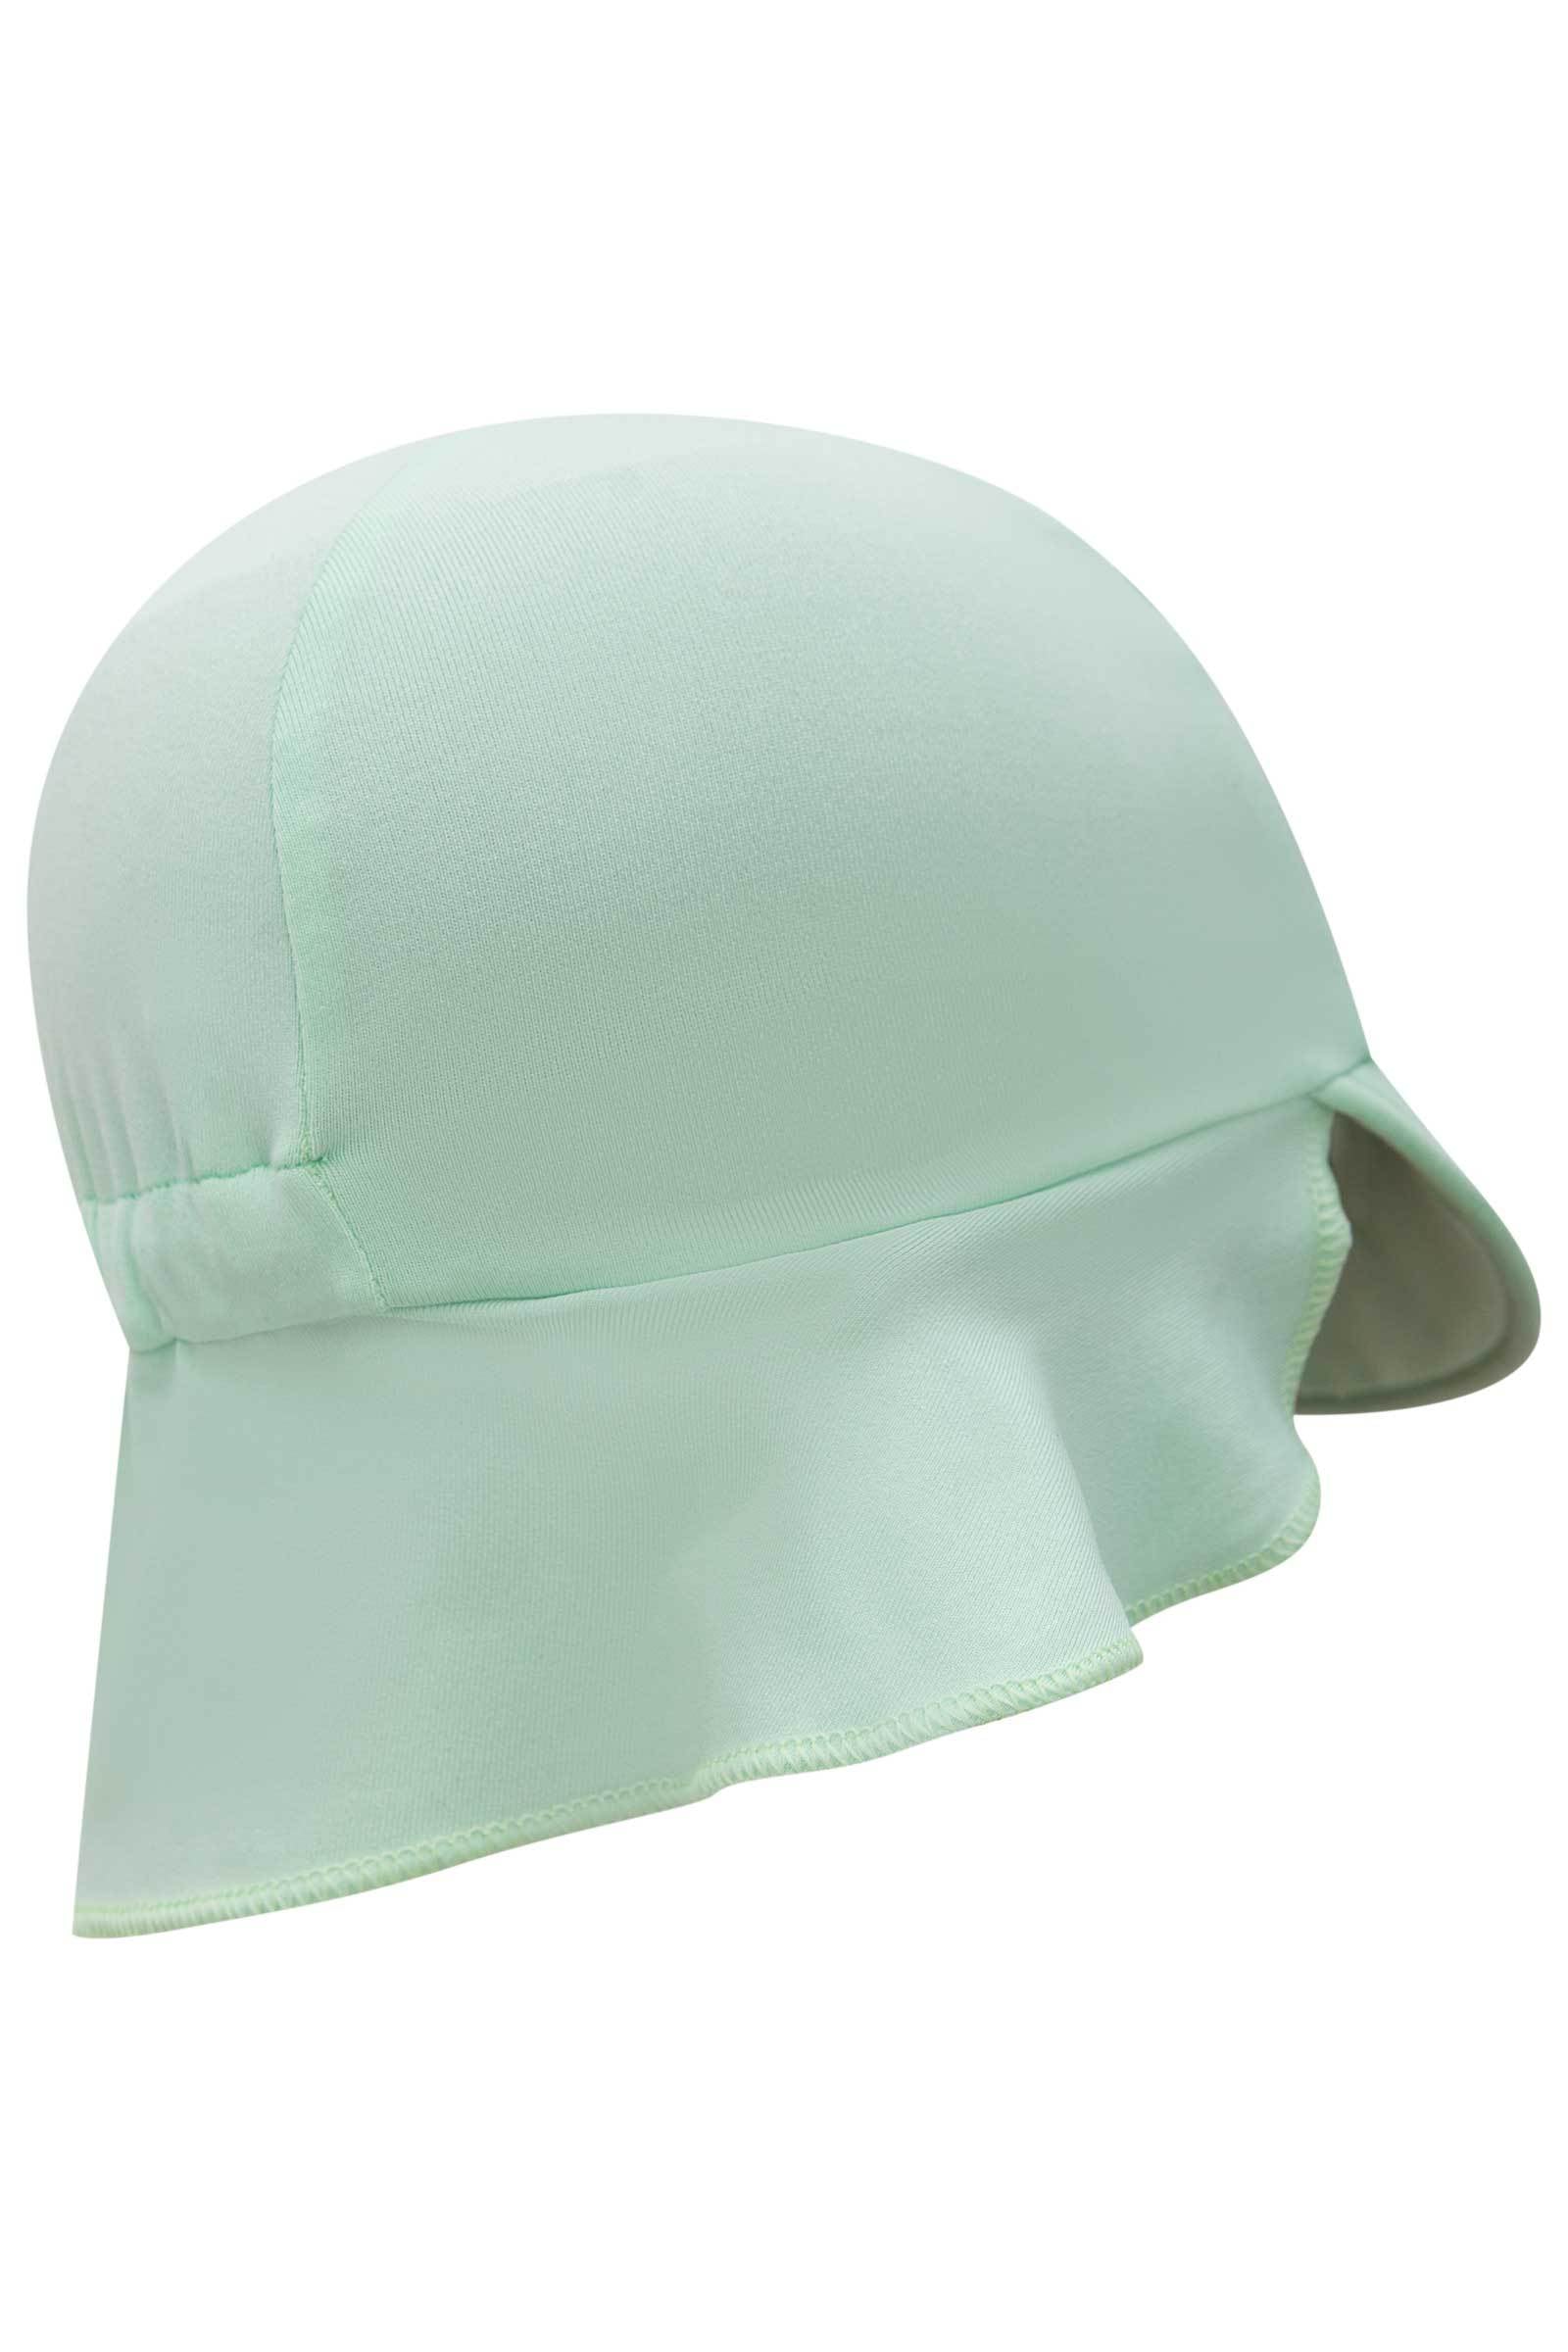 Chapéu em Malha Uv Dry com Proteção Uv 50+ 74343 Infanti